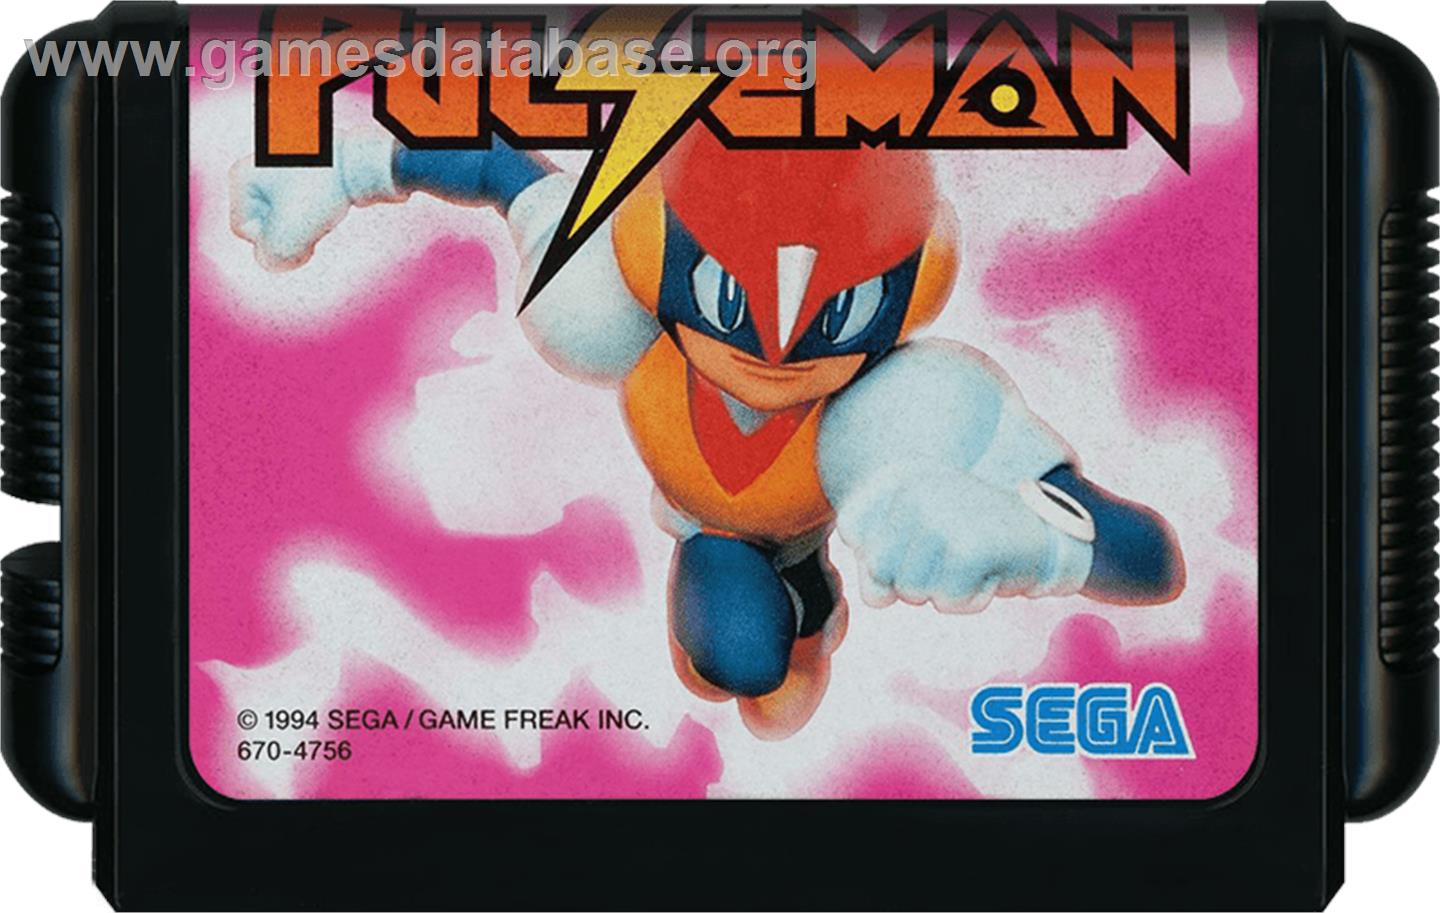 Pulseman - Sega Genesis - Artwork - Cartridge